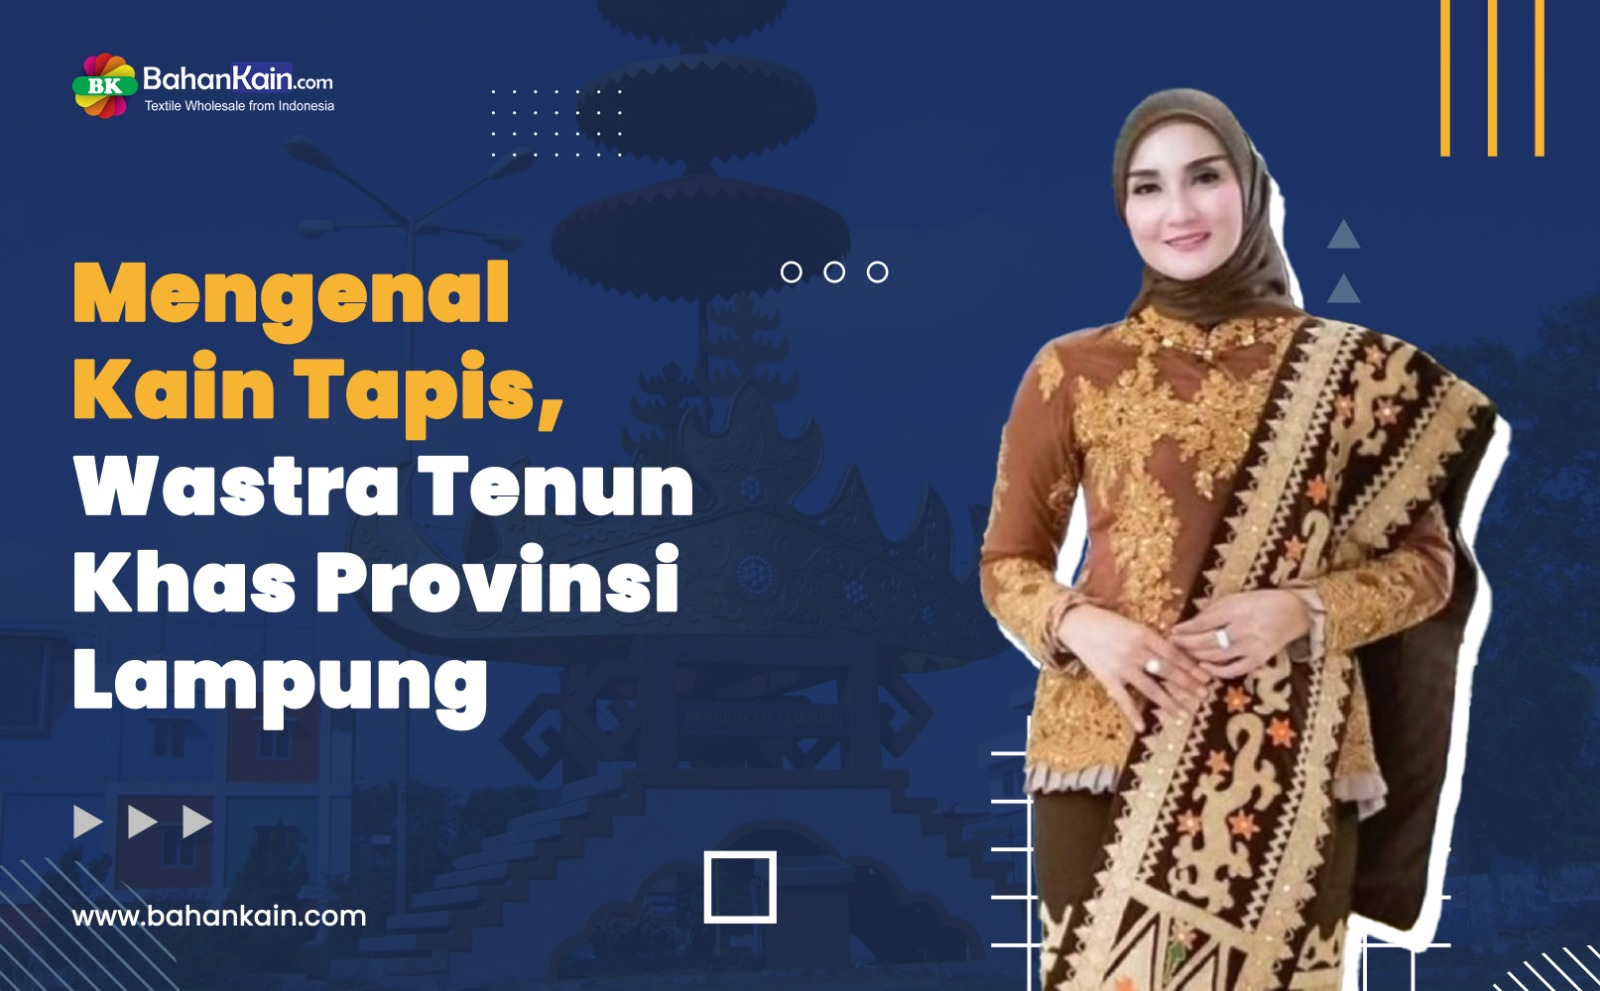 Mengenal Kain Tapis, Wastra Tenun Khas Provinsi Lampung